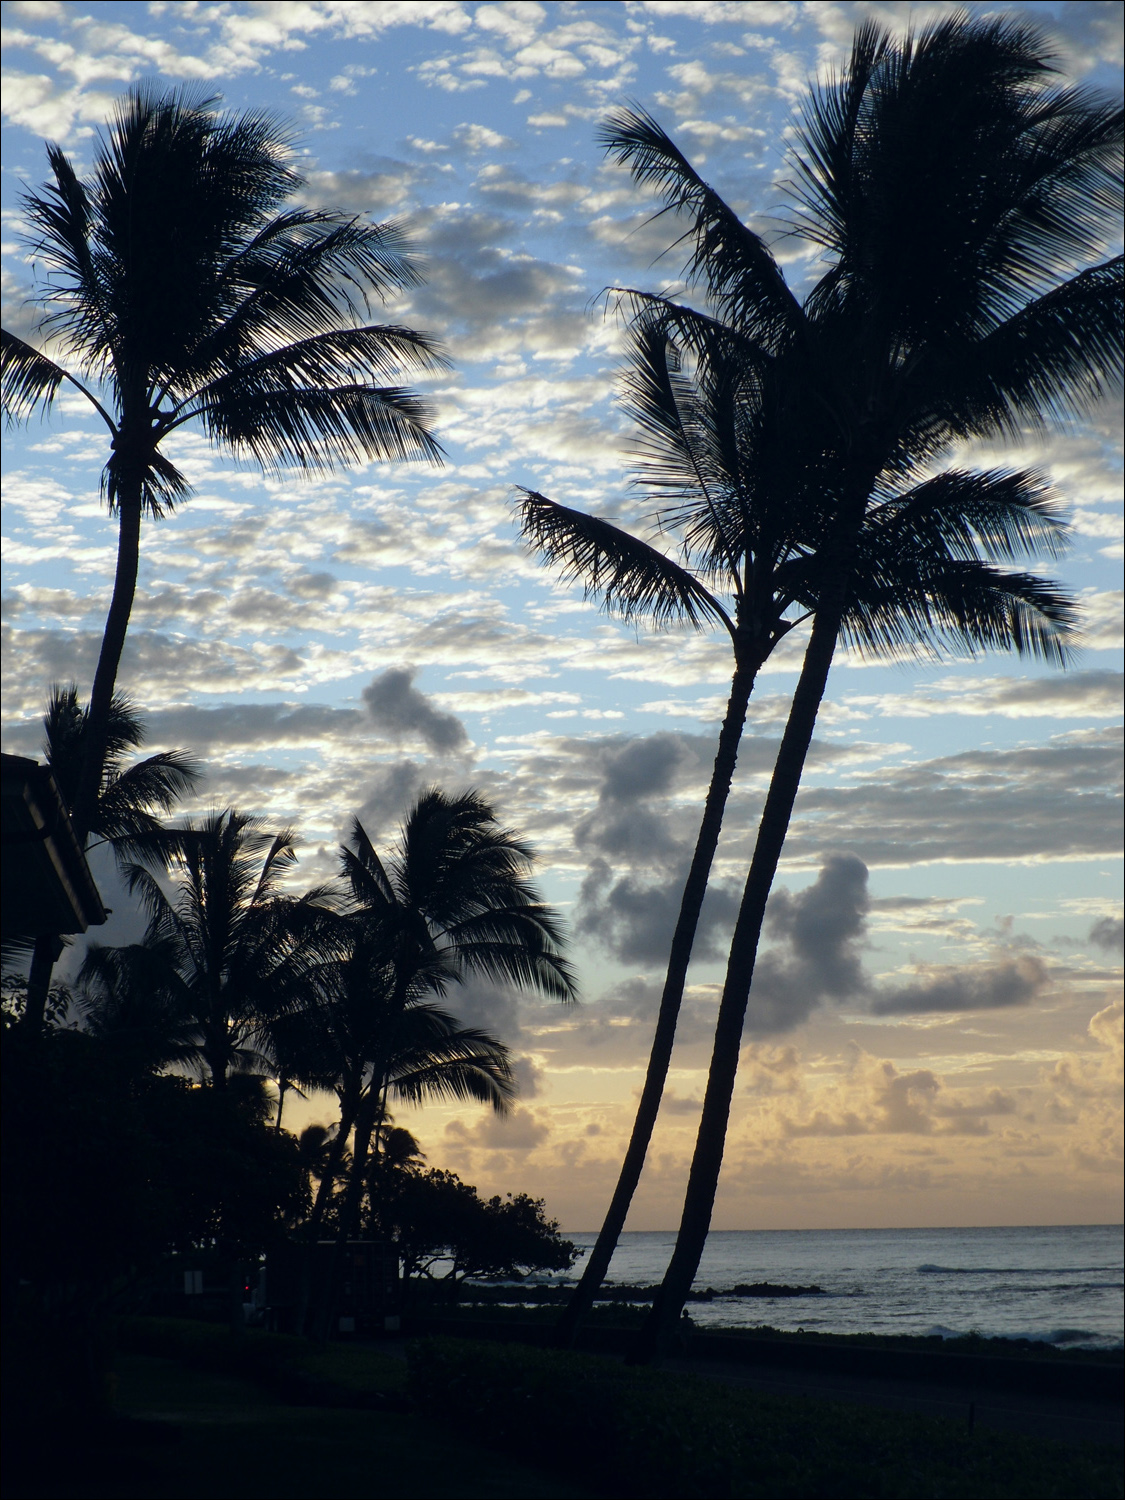 Last Kauai sunset